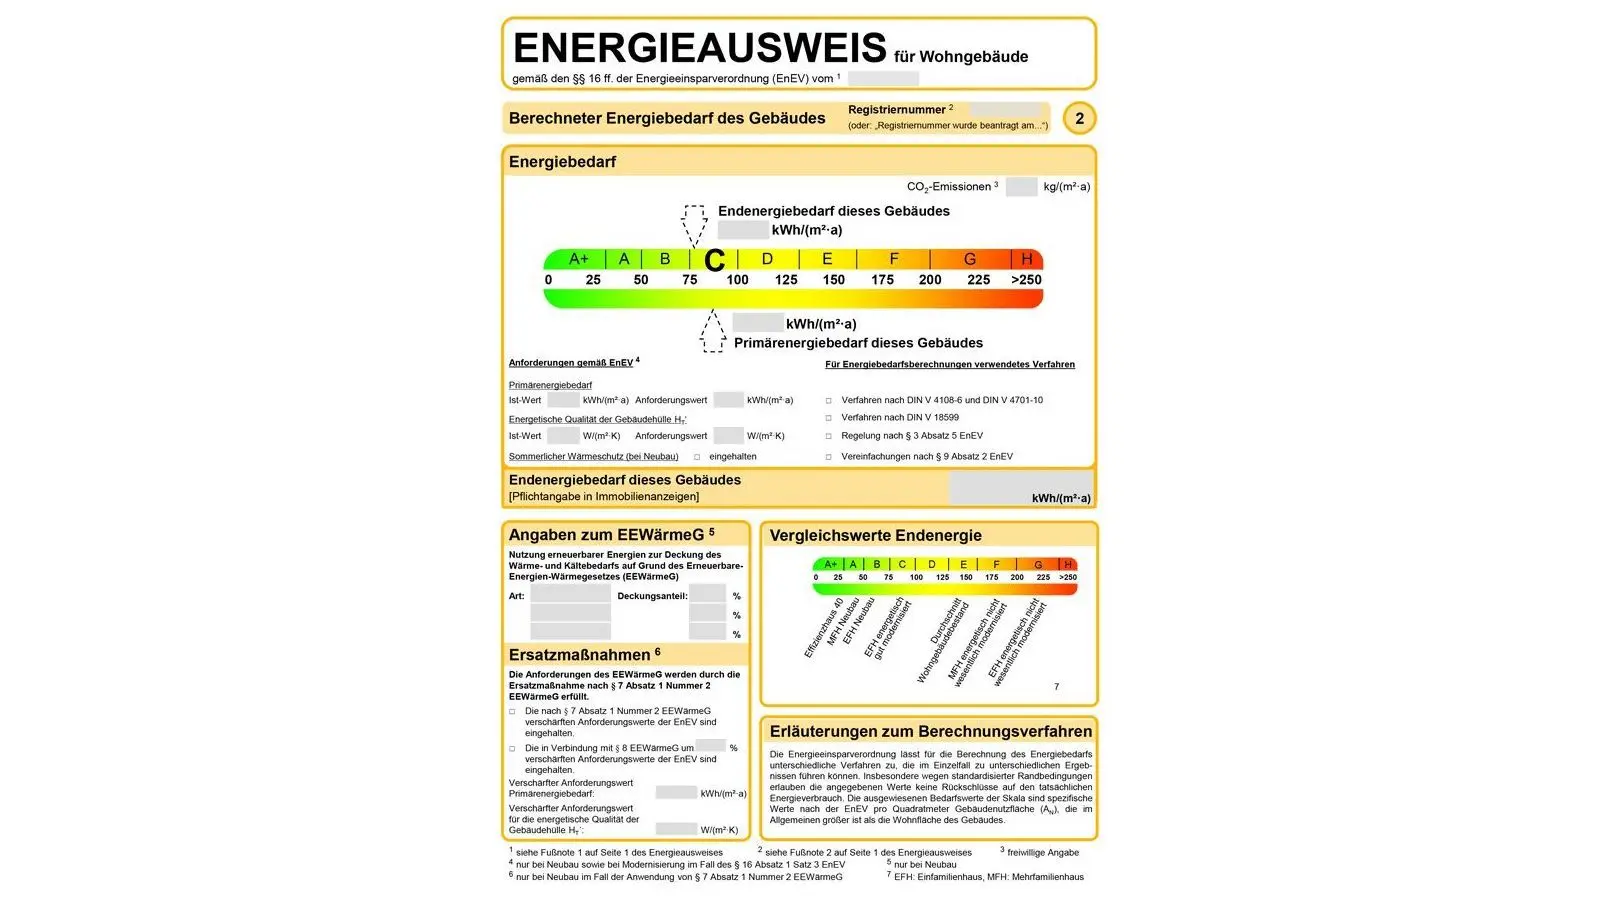 Ein Energieausweis, der neben Informationen zu einem Wohngebäude, den Energiebedarf anhand von einer A+ bis H Skala anzeigt. Dies wird durch Ampelfarben von grün bis rot visuell verdeutlicht.